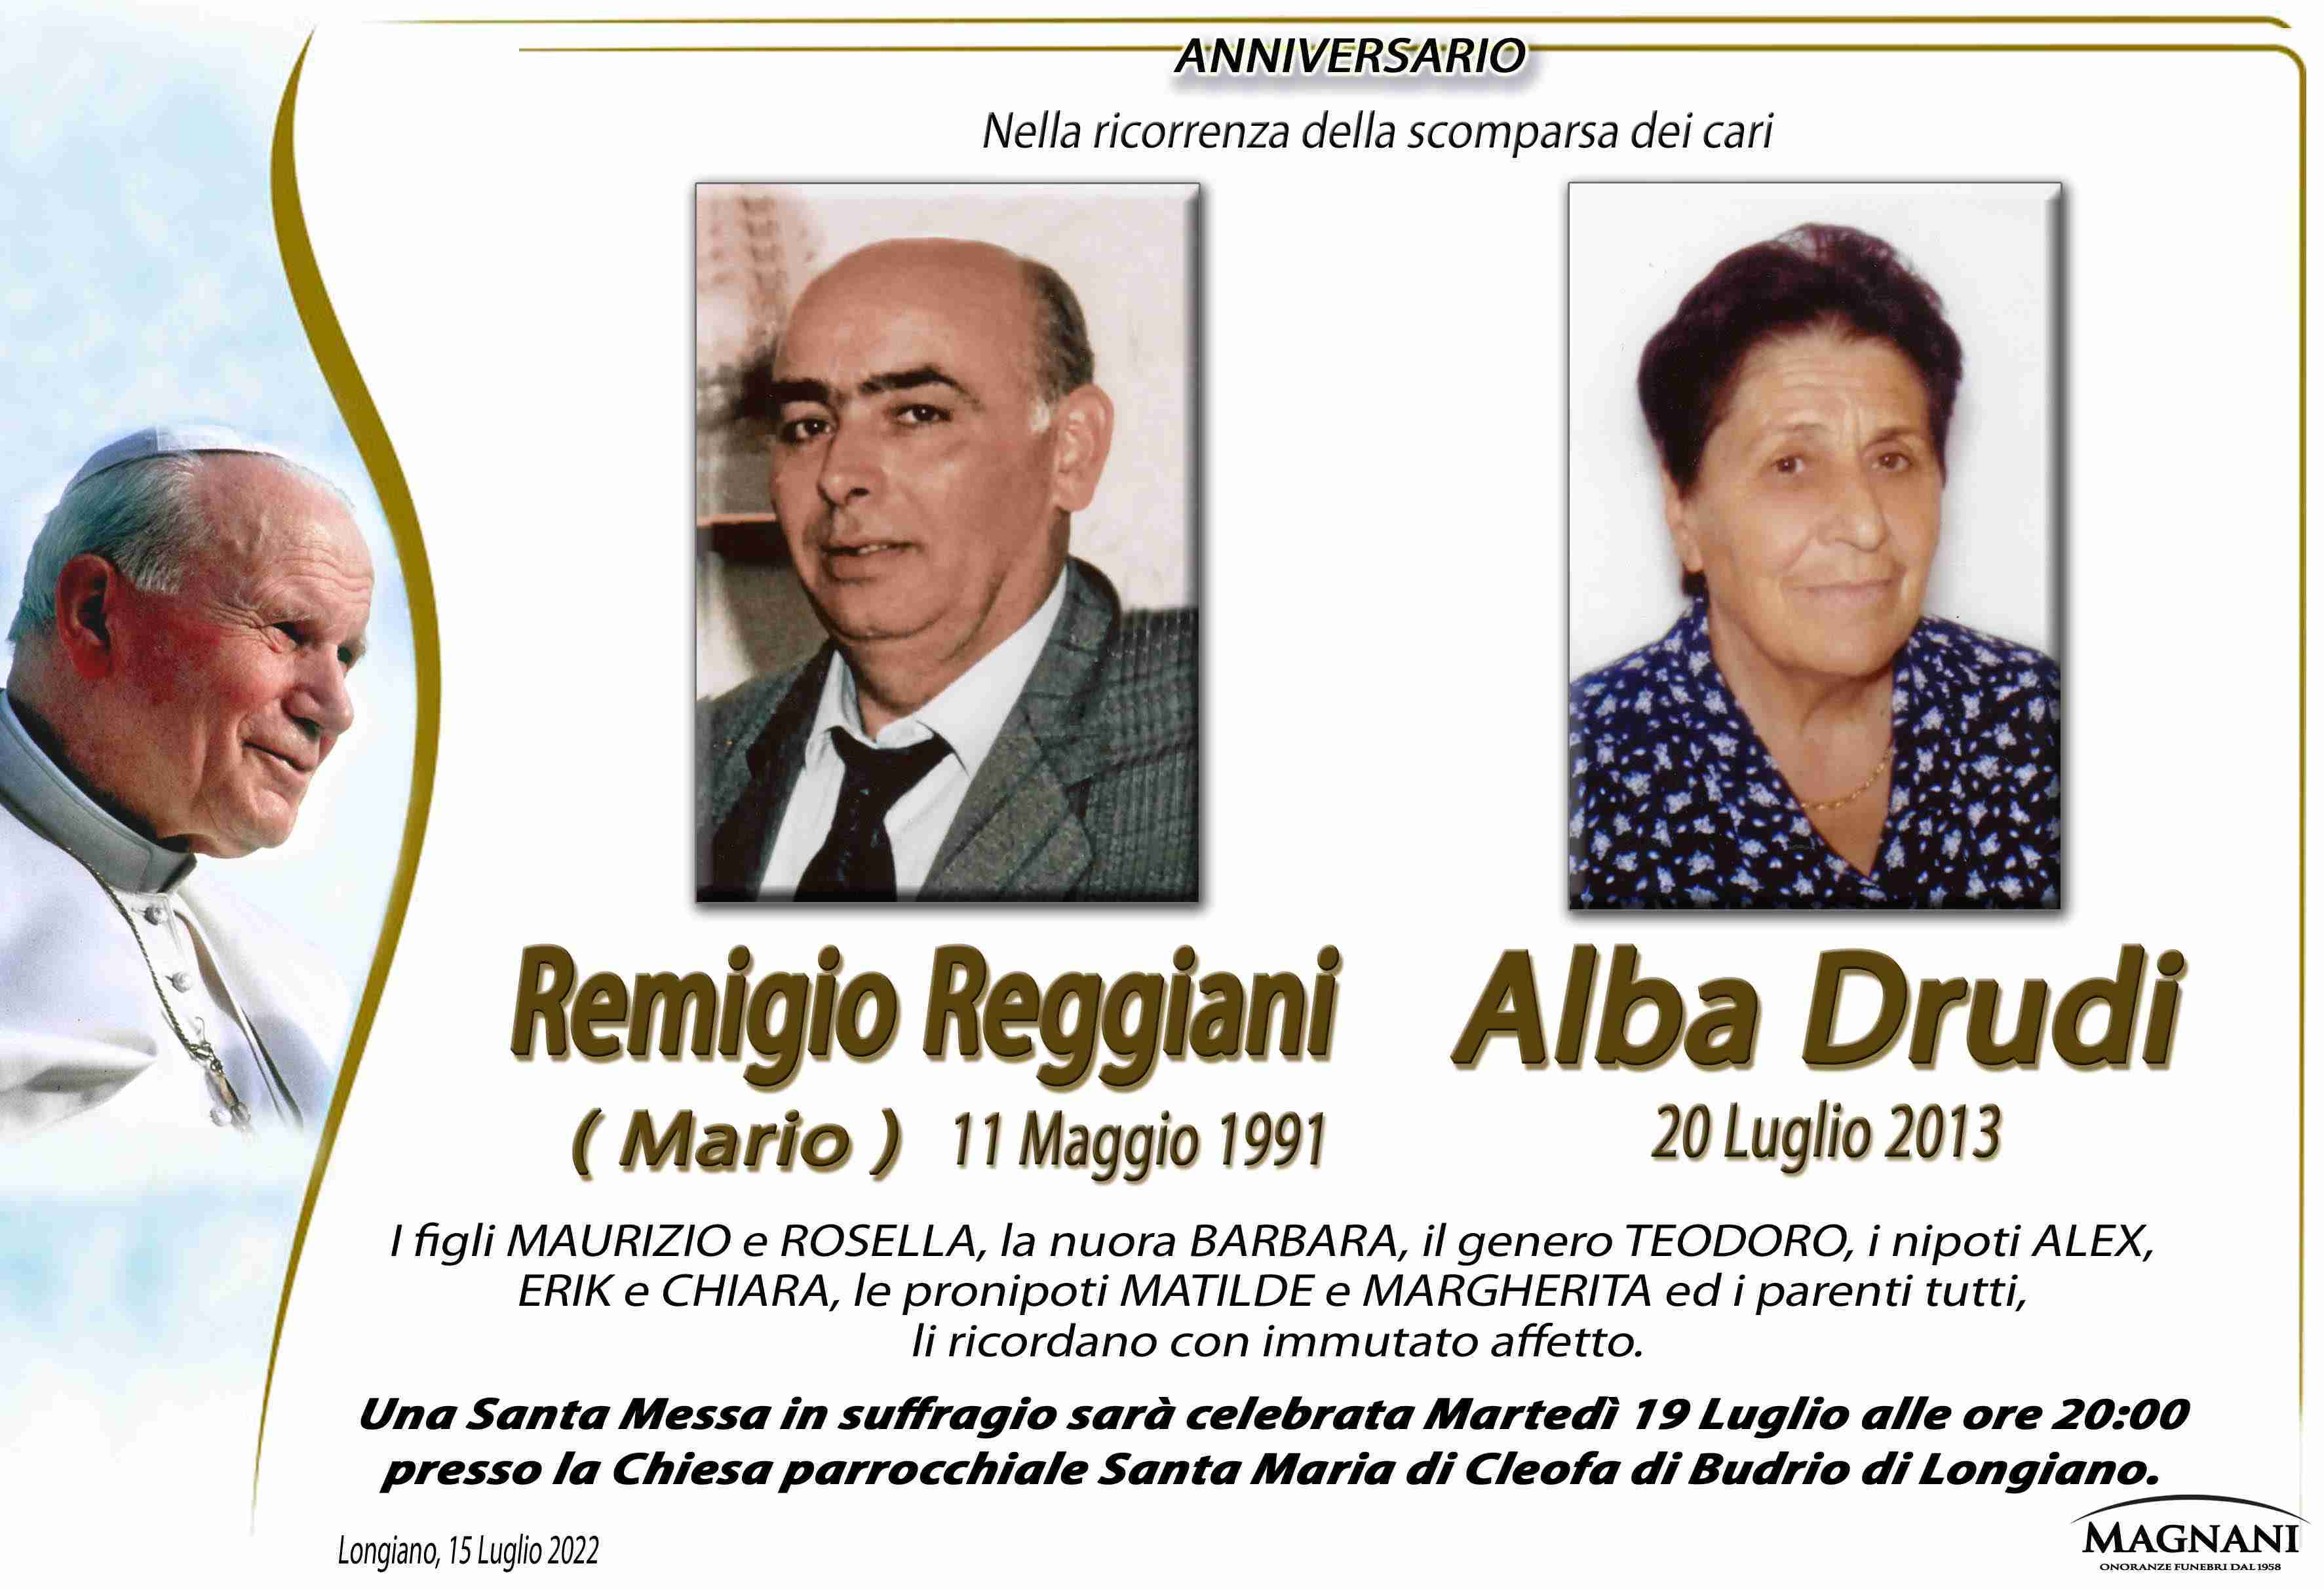 Remigio Reggiani e Alba Drudi